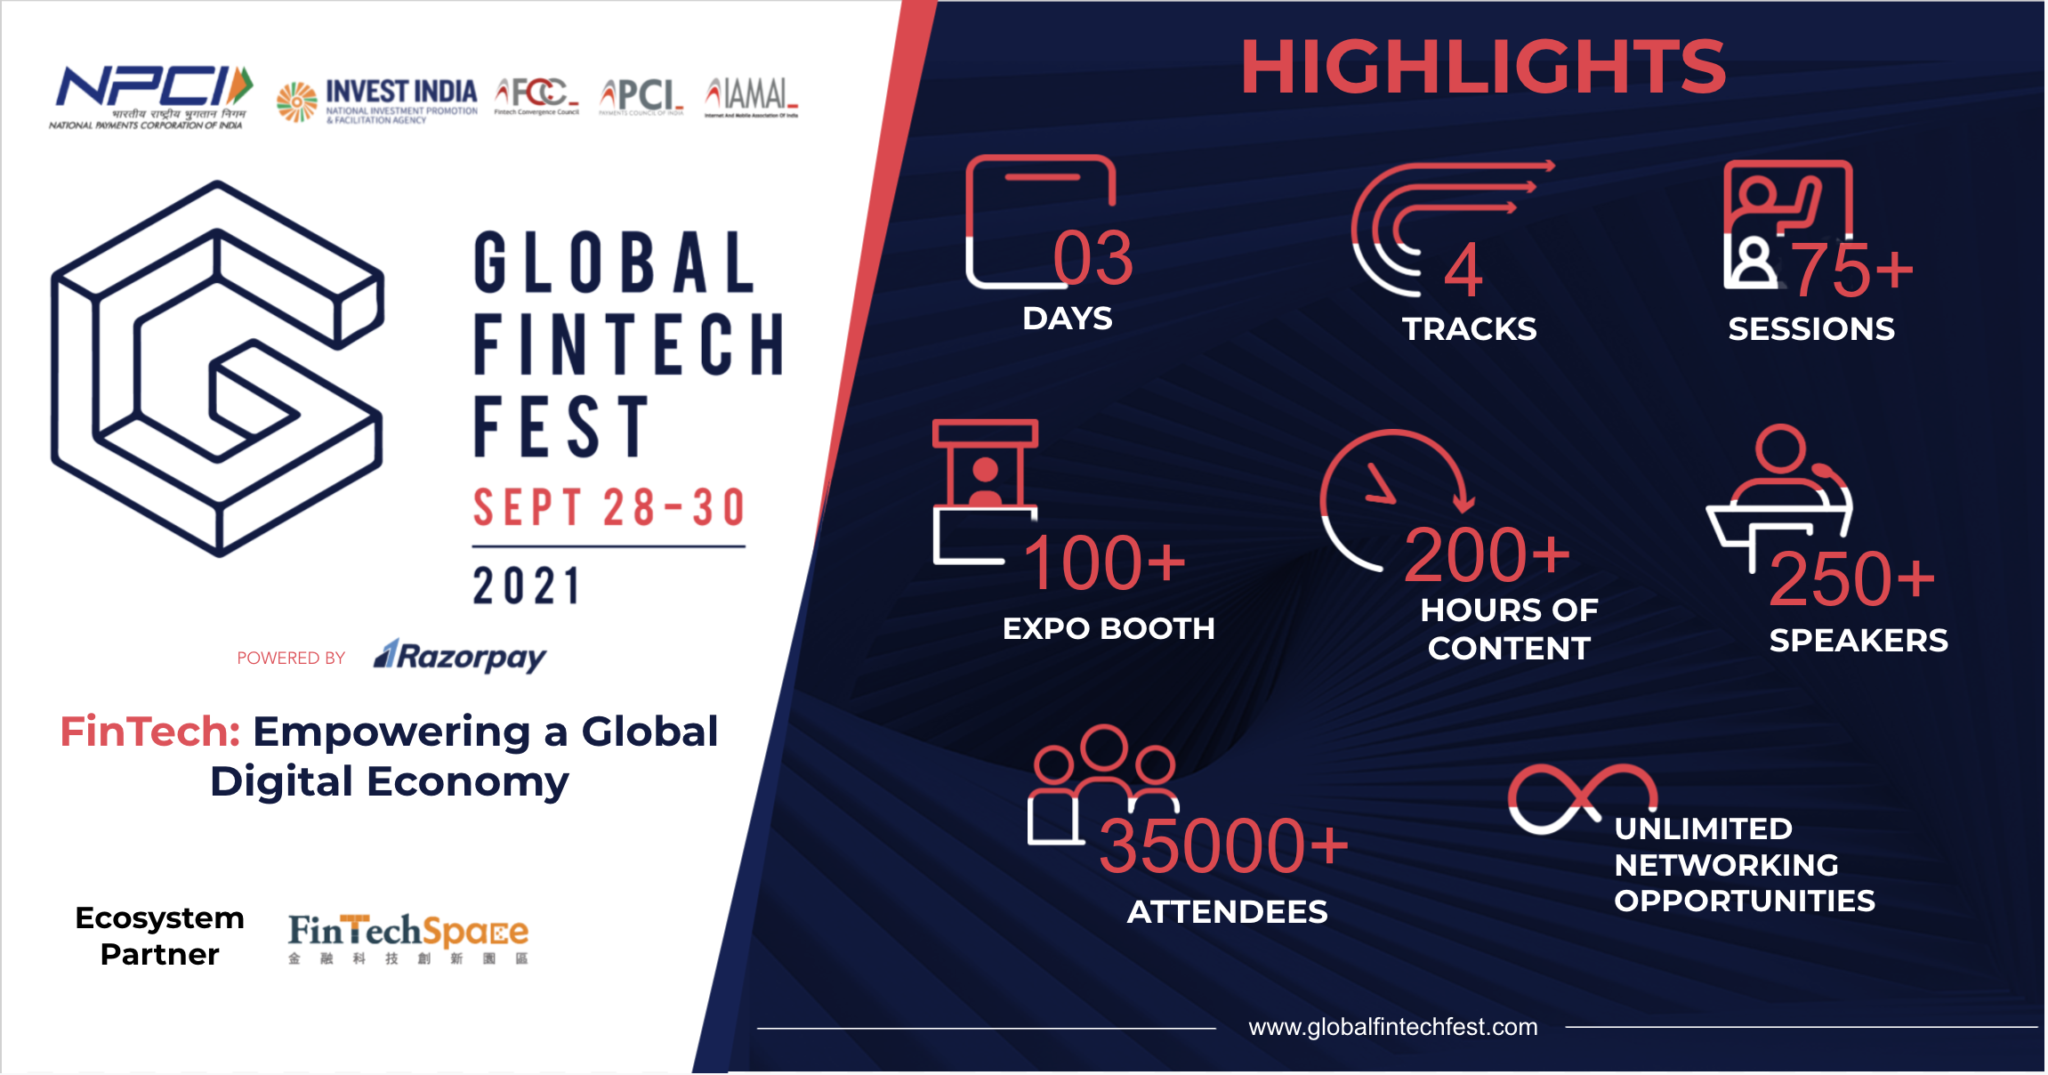 Global Fintech Fest 2021